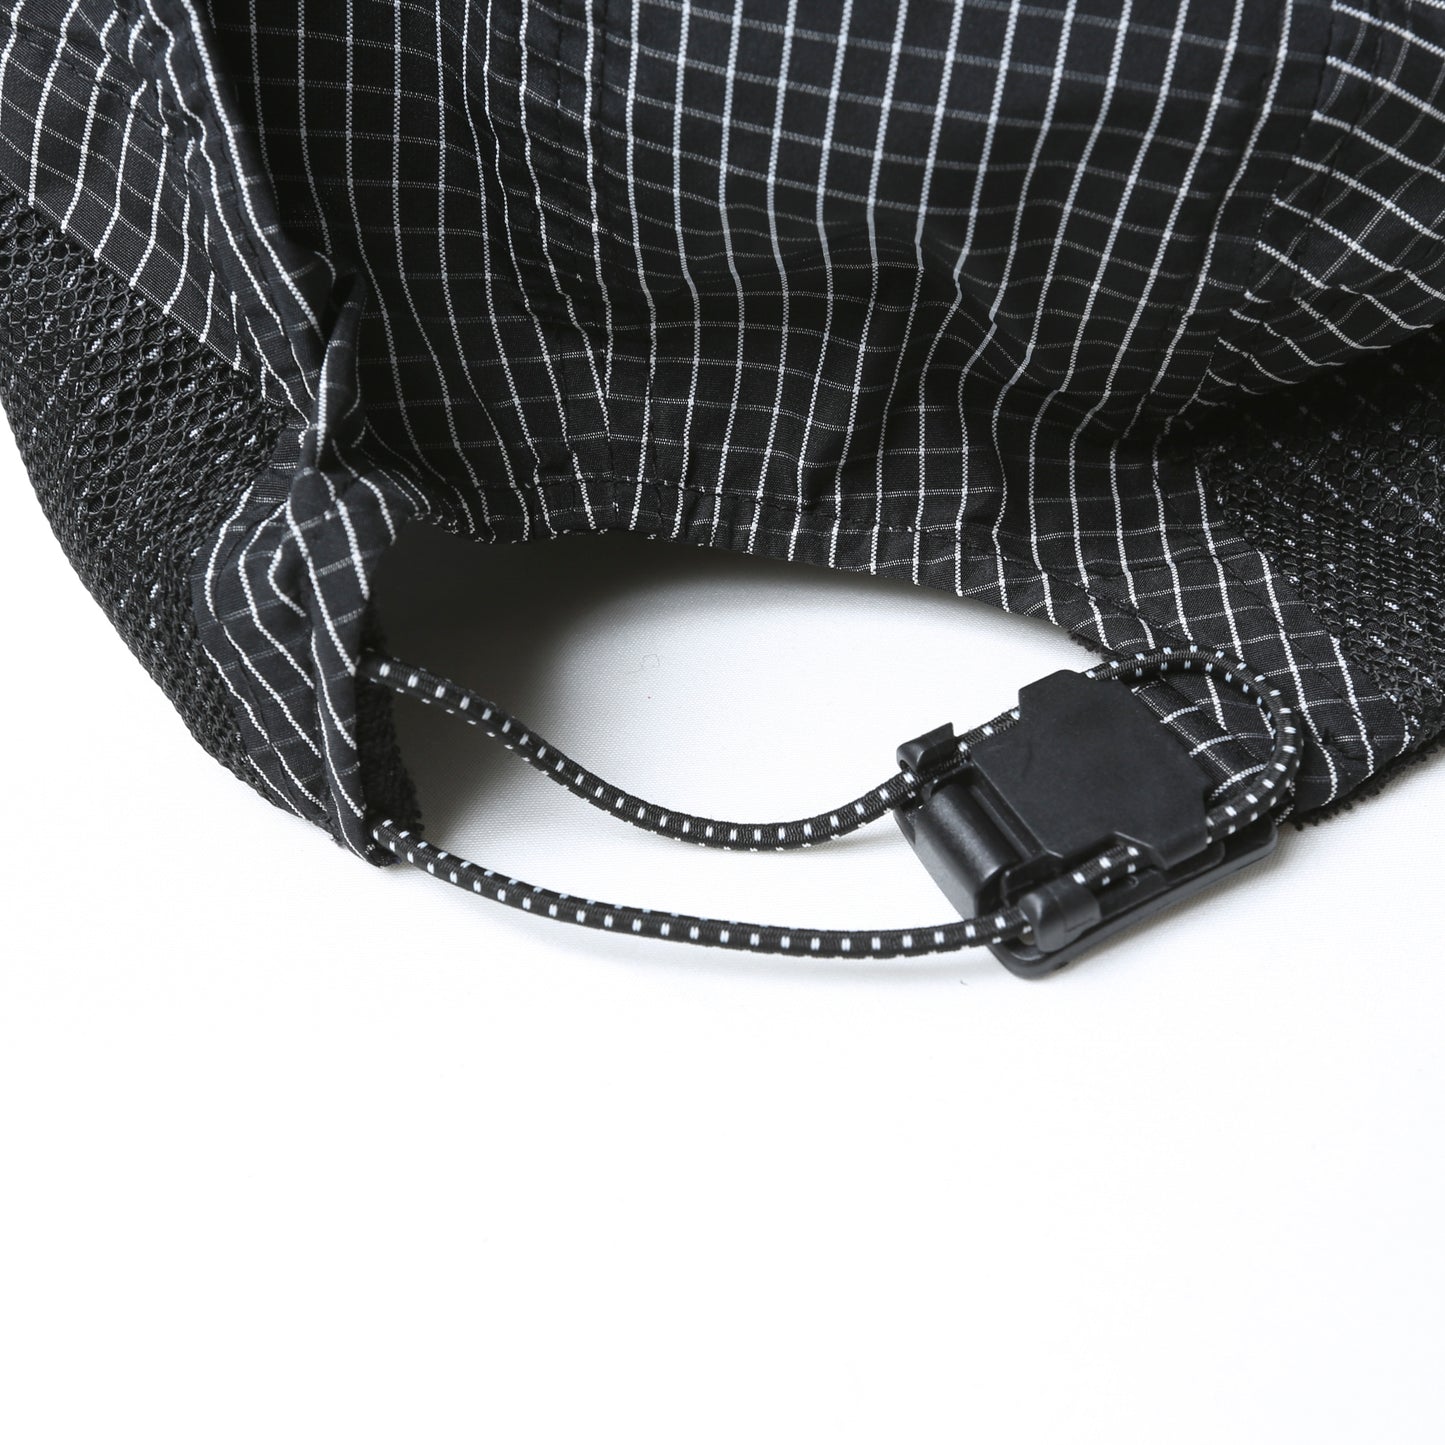 Liberaiders ®(リベレイダース) / GRID CLOTH CAP 70901 BLACK